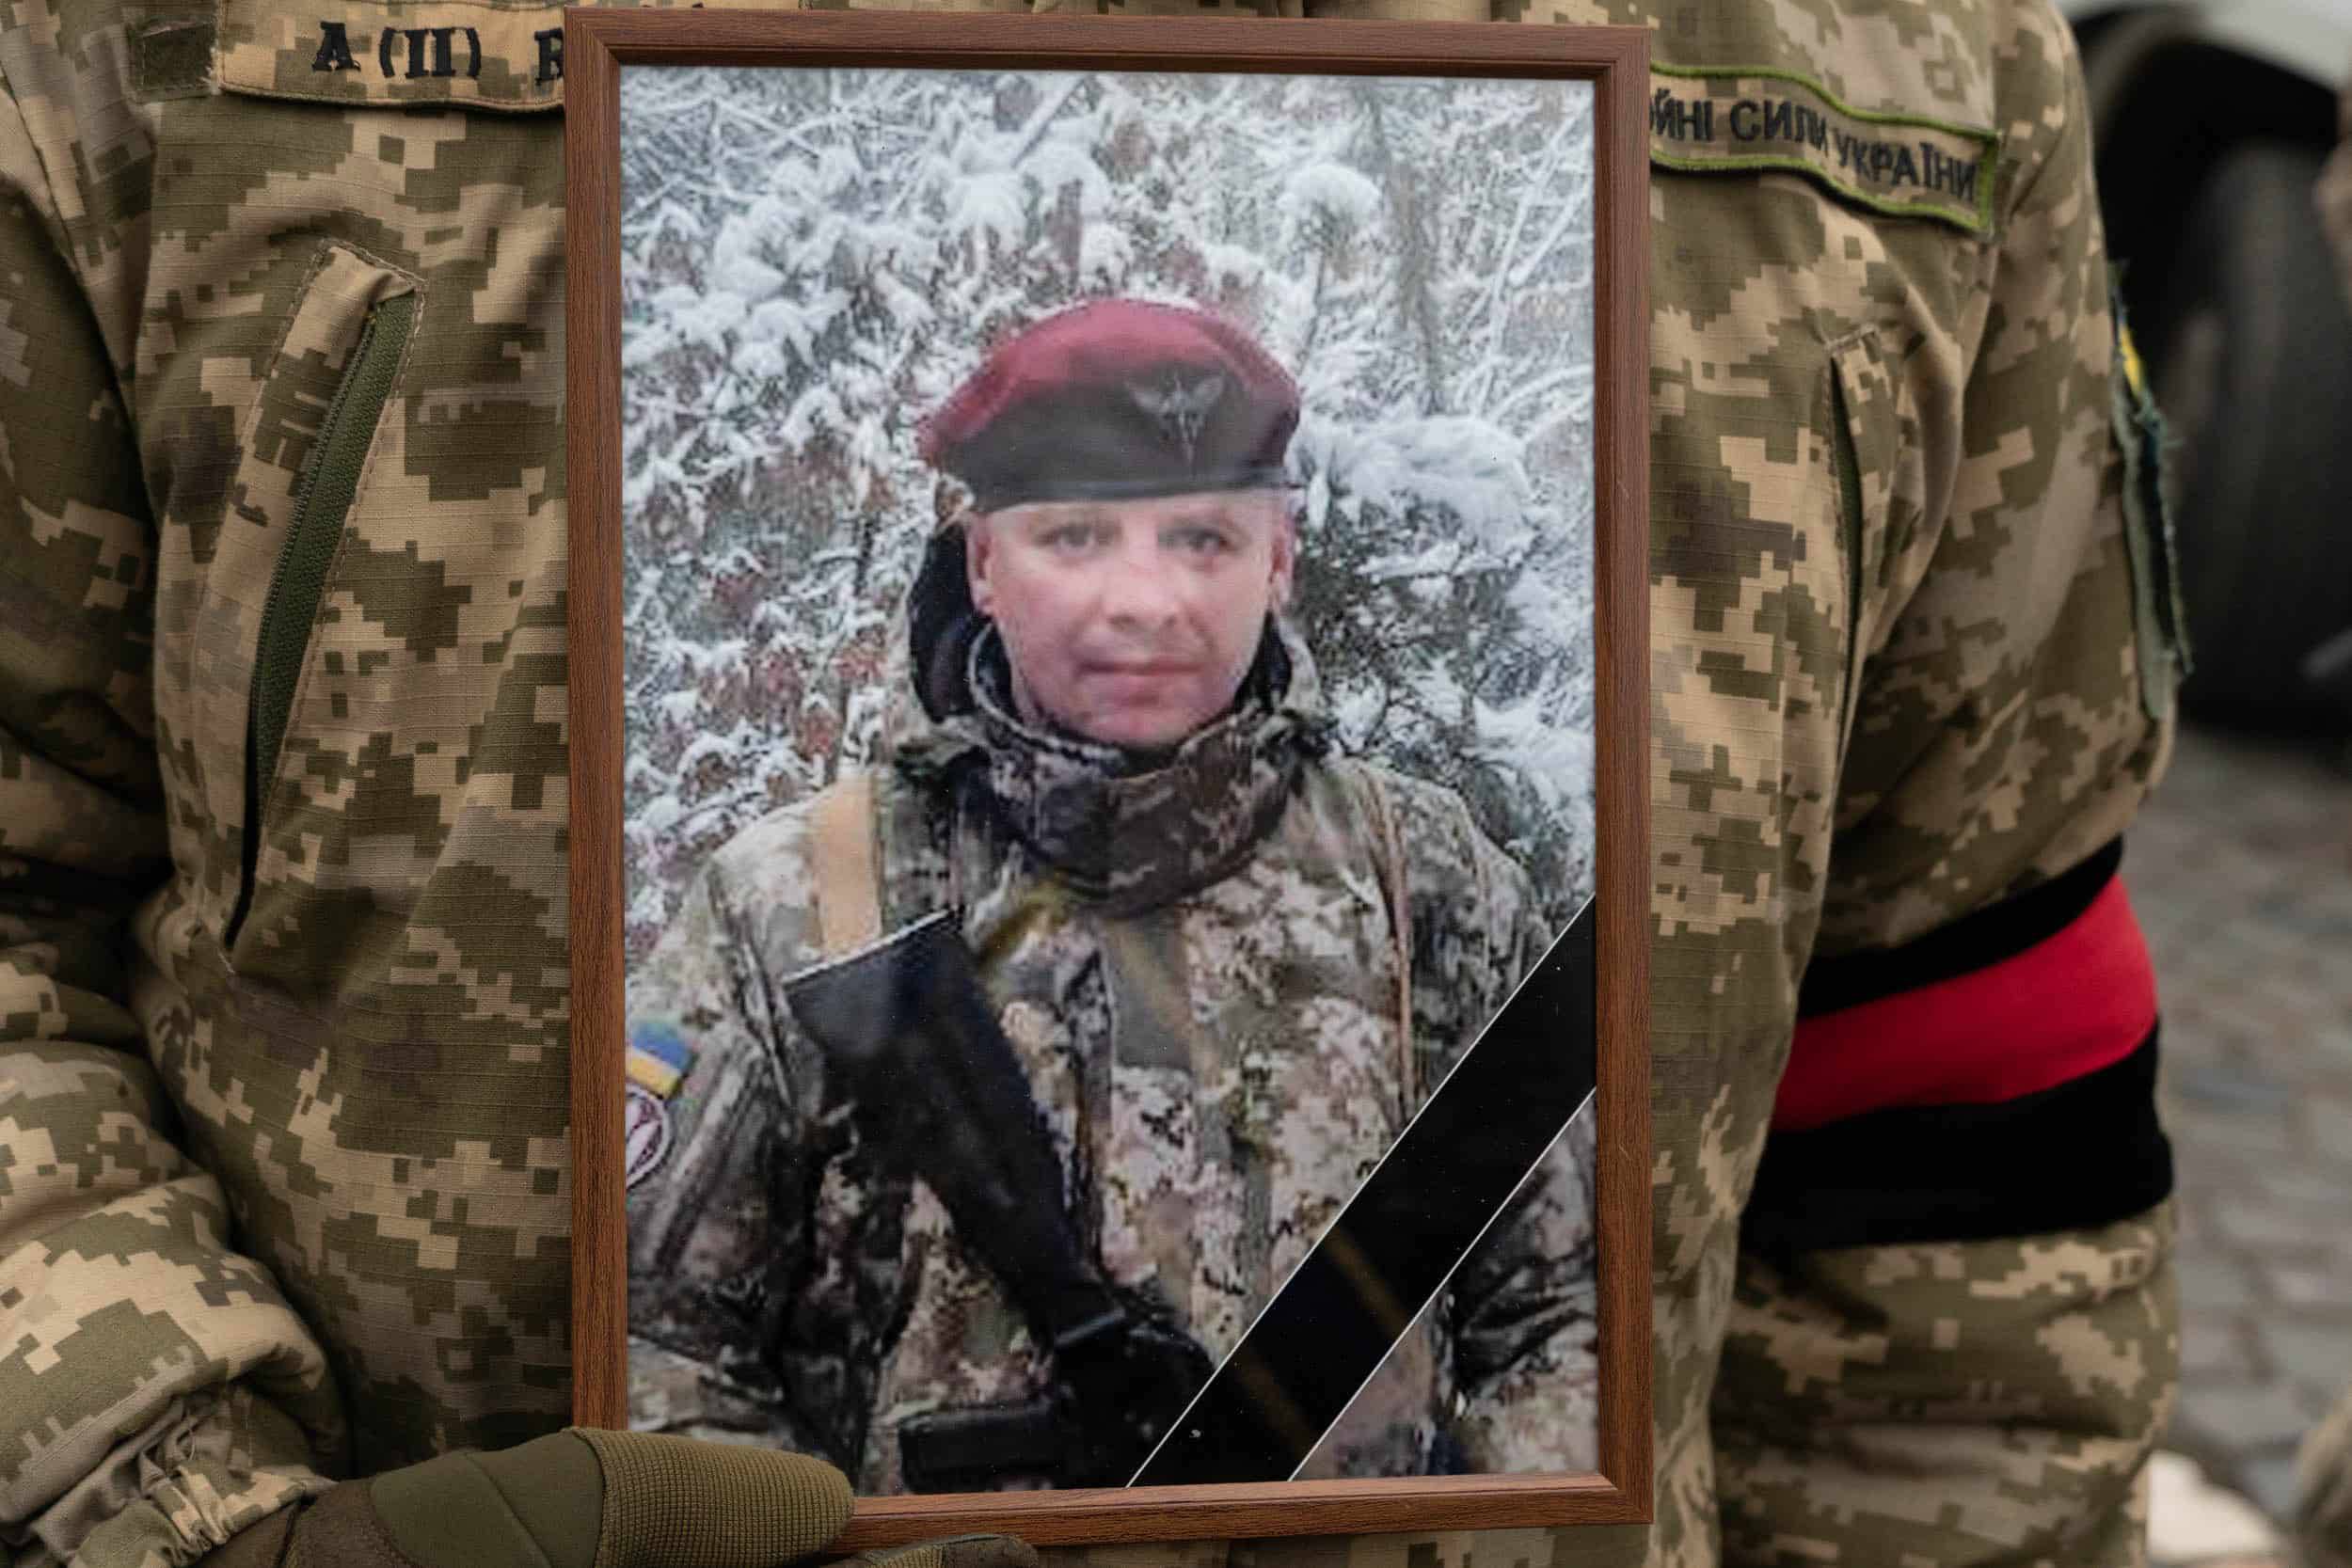 Сьогодні в Ужгороді попрощалися із ще одним захисником, який віддав життя за Україну, – молодшим сержантом Андрієм Жуковським